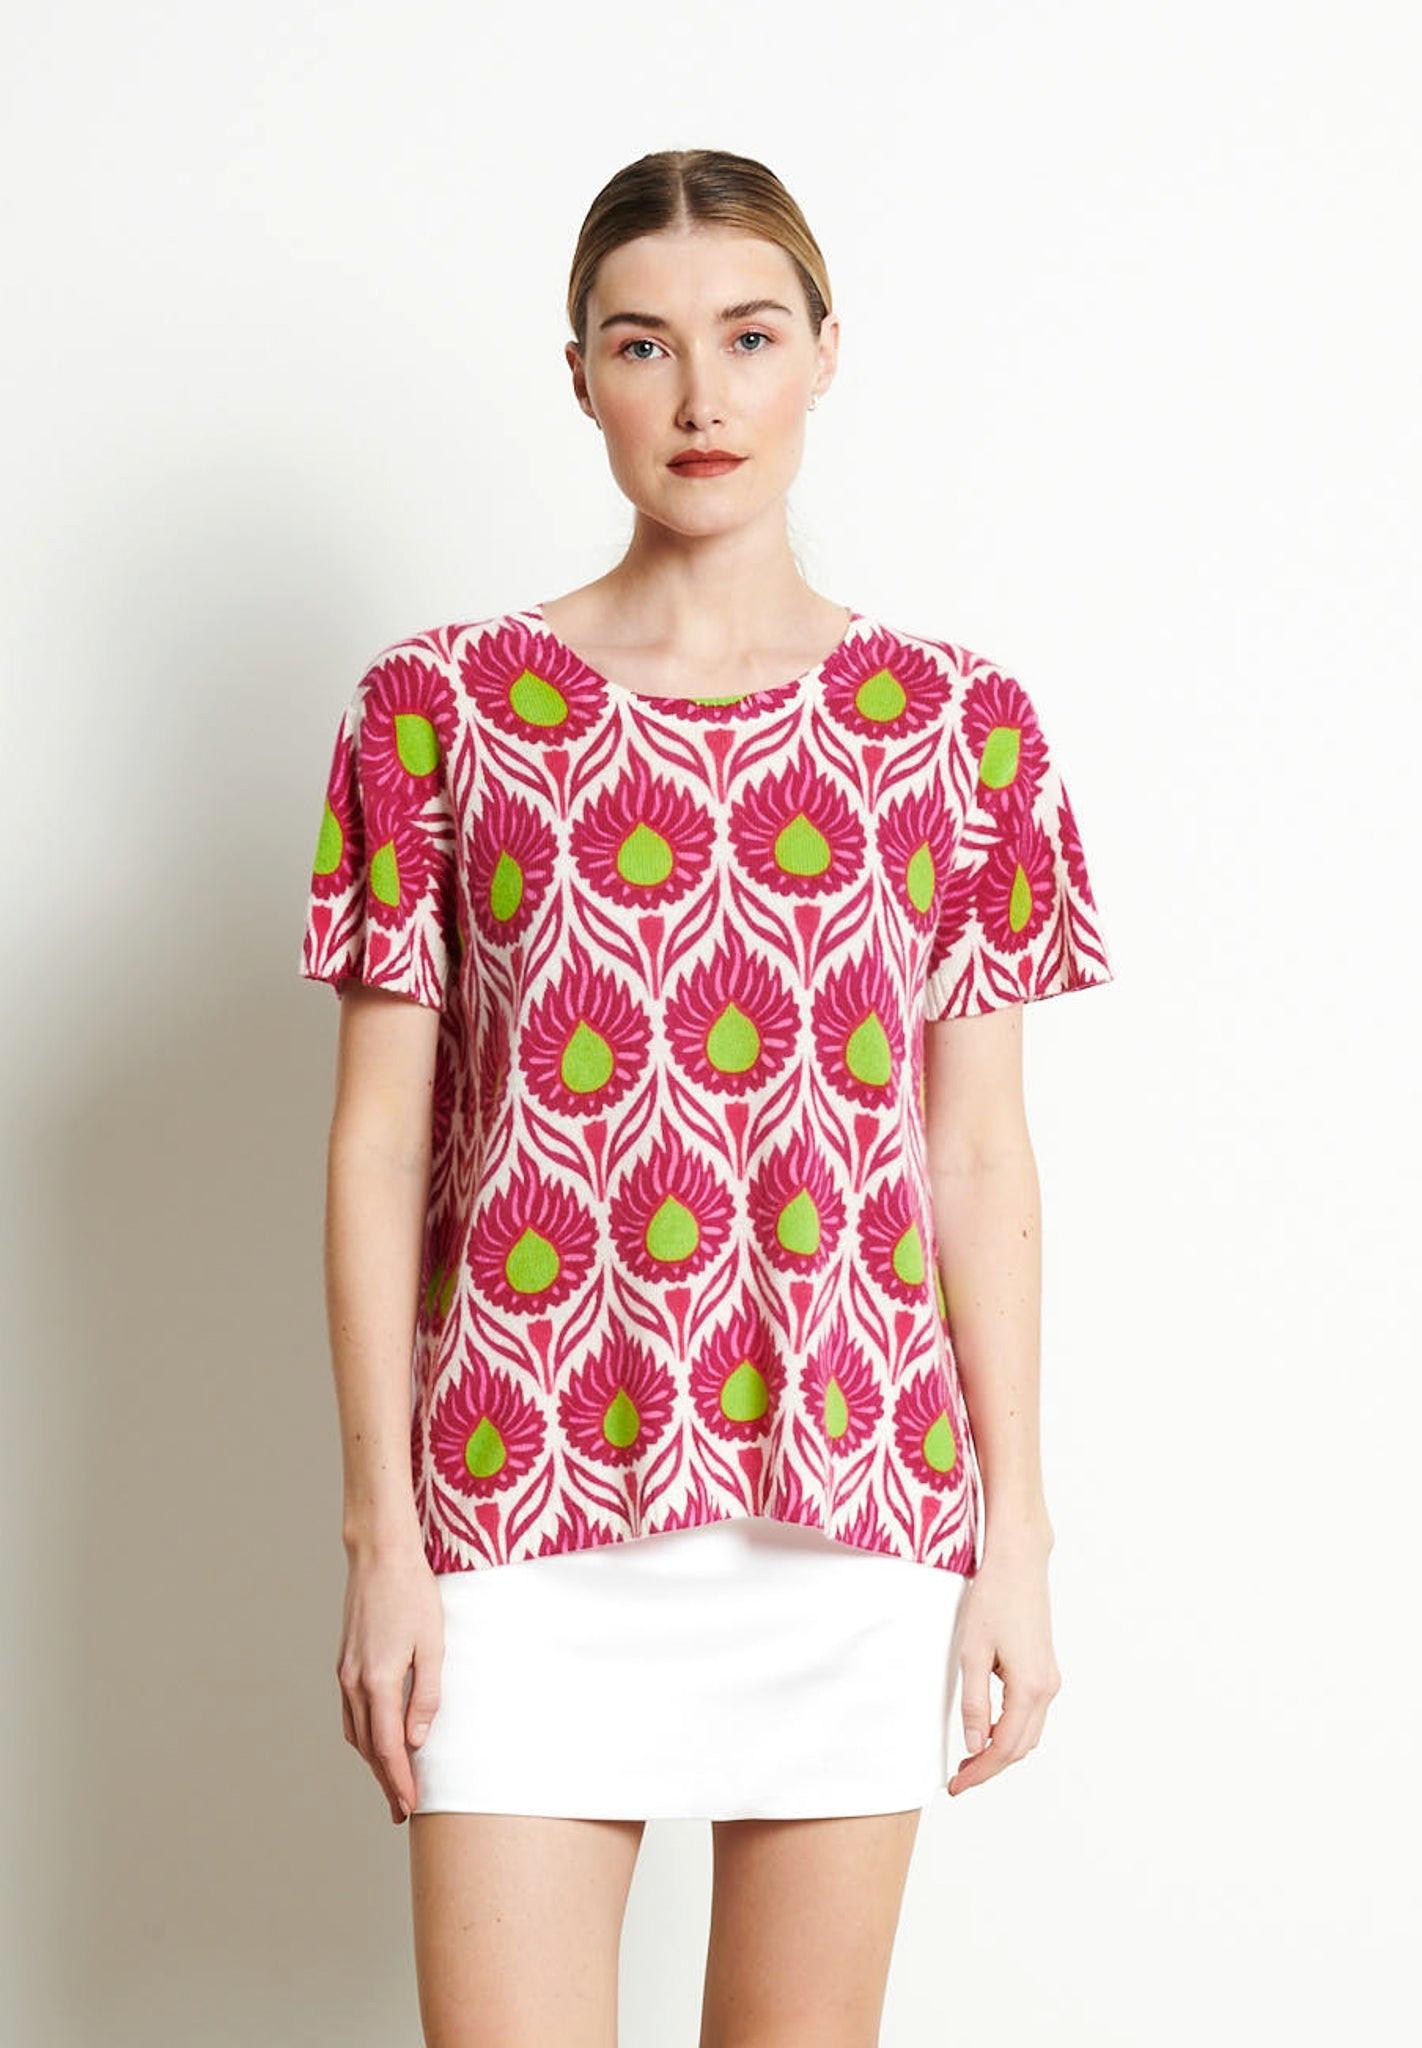 Ria 12 Rundhals T-shirt Blumenprint - 100% Kaschmir Damen Offwhite S/M von Studio Cashmere8